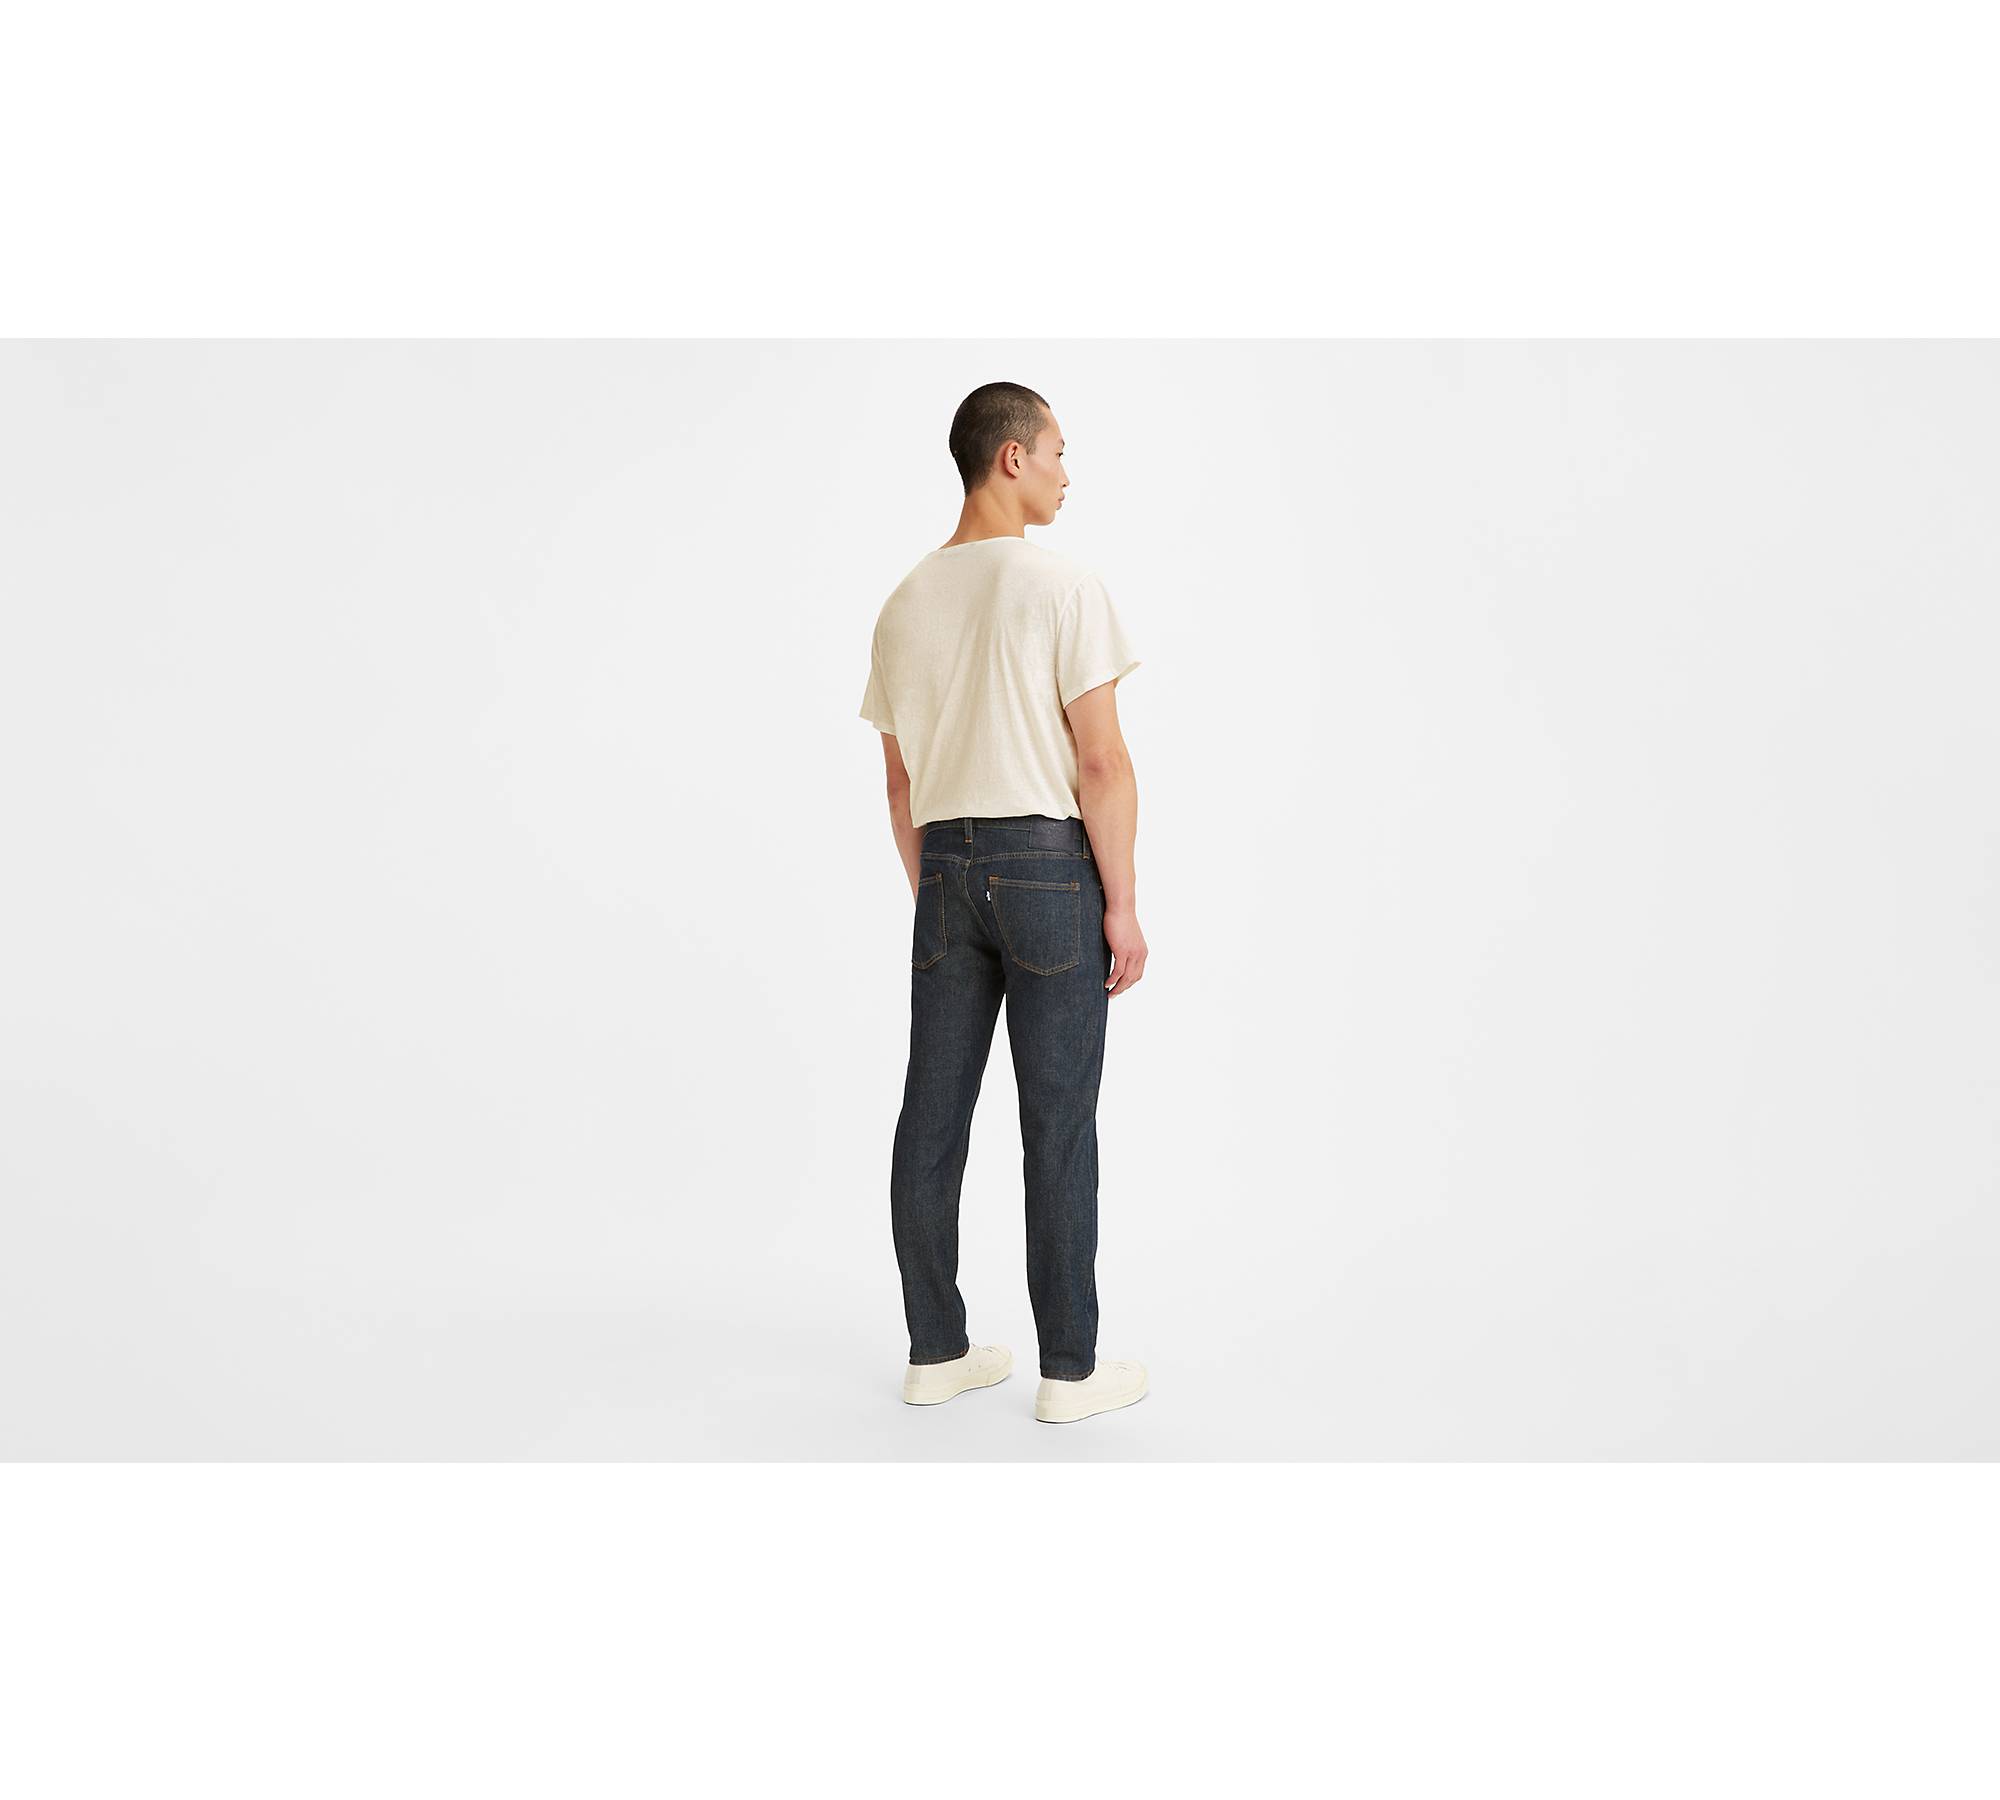 Men's Selvedge Slim Tapered Jeans in Indigo - Thursday